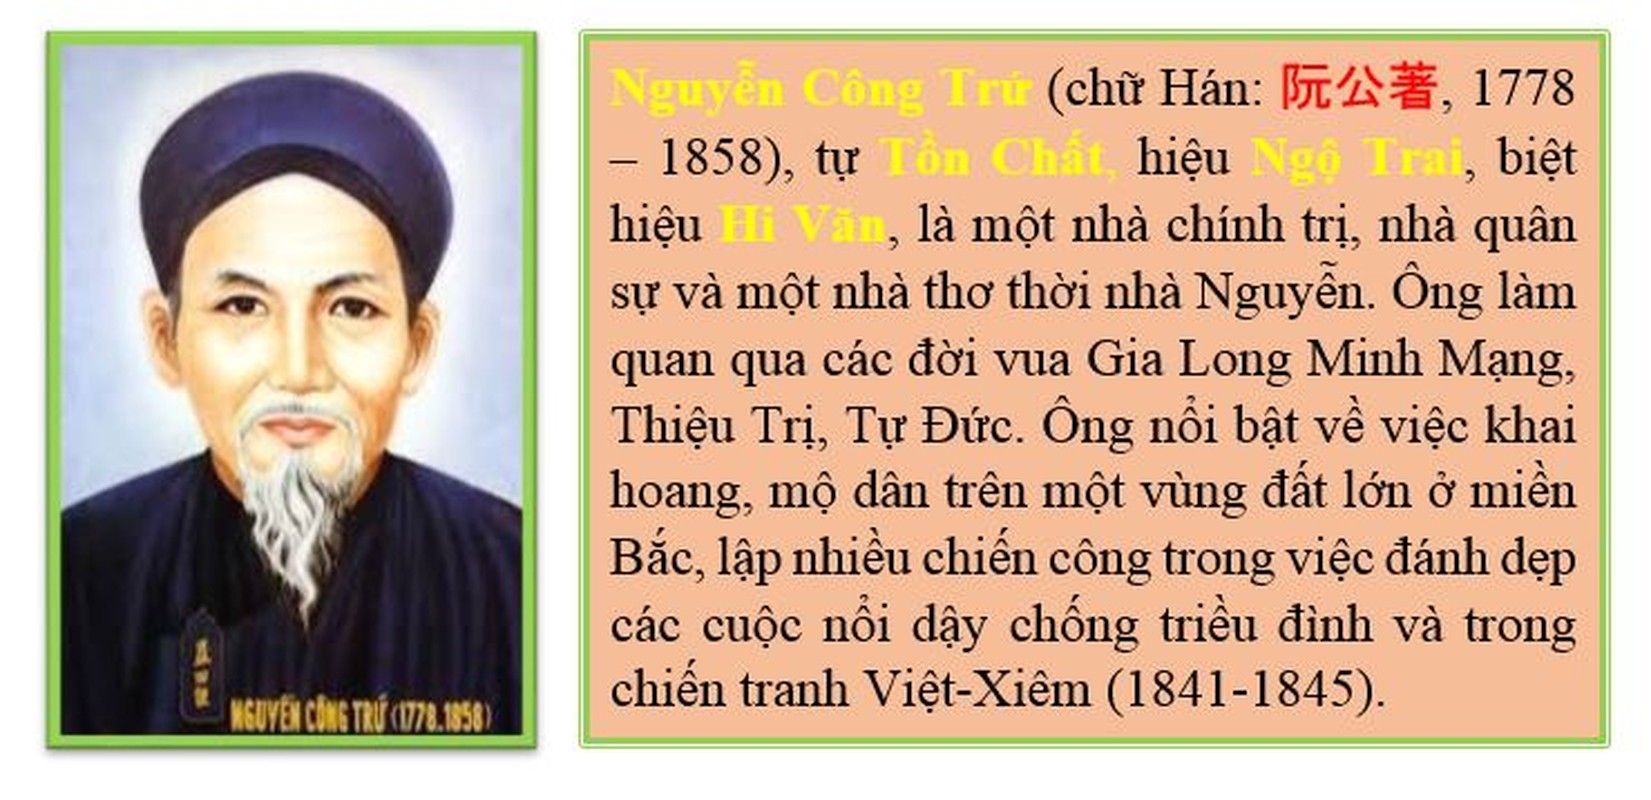 Nguyen Cong Tru, vi quan “ngong”, 80 tuoi van xin tong quan danh giac-Hinh-2